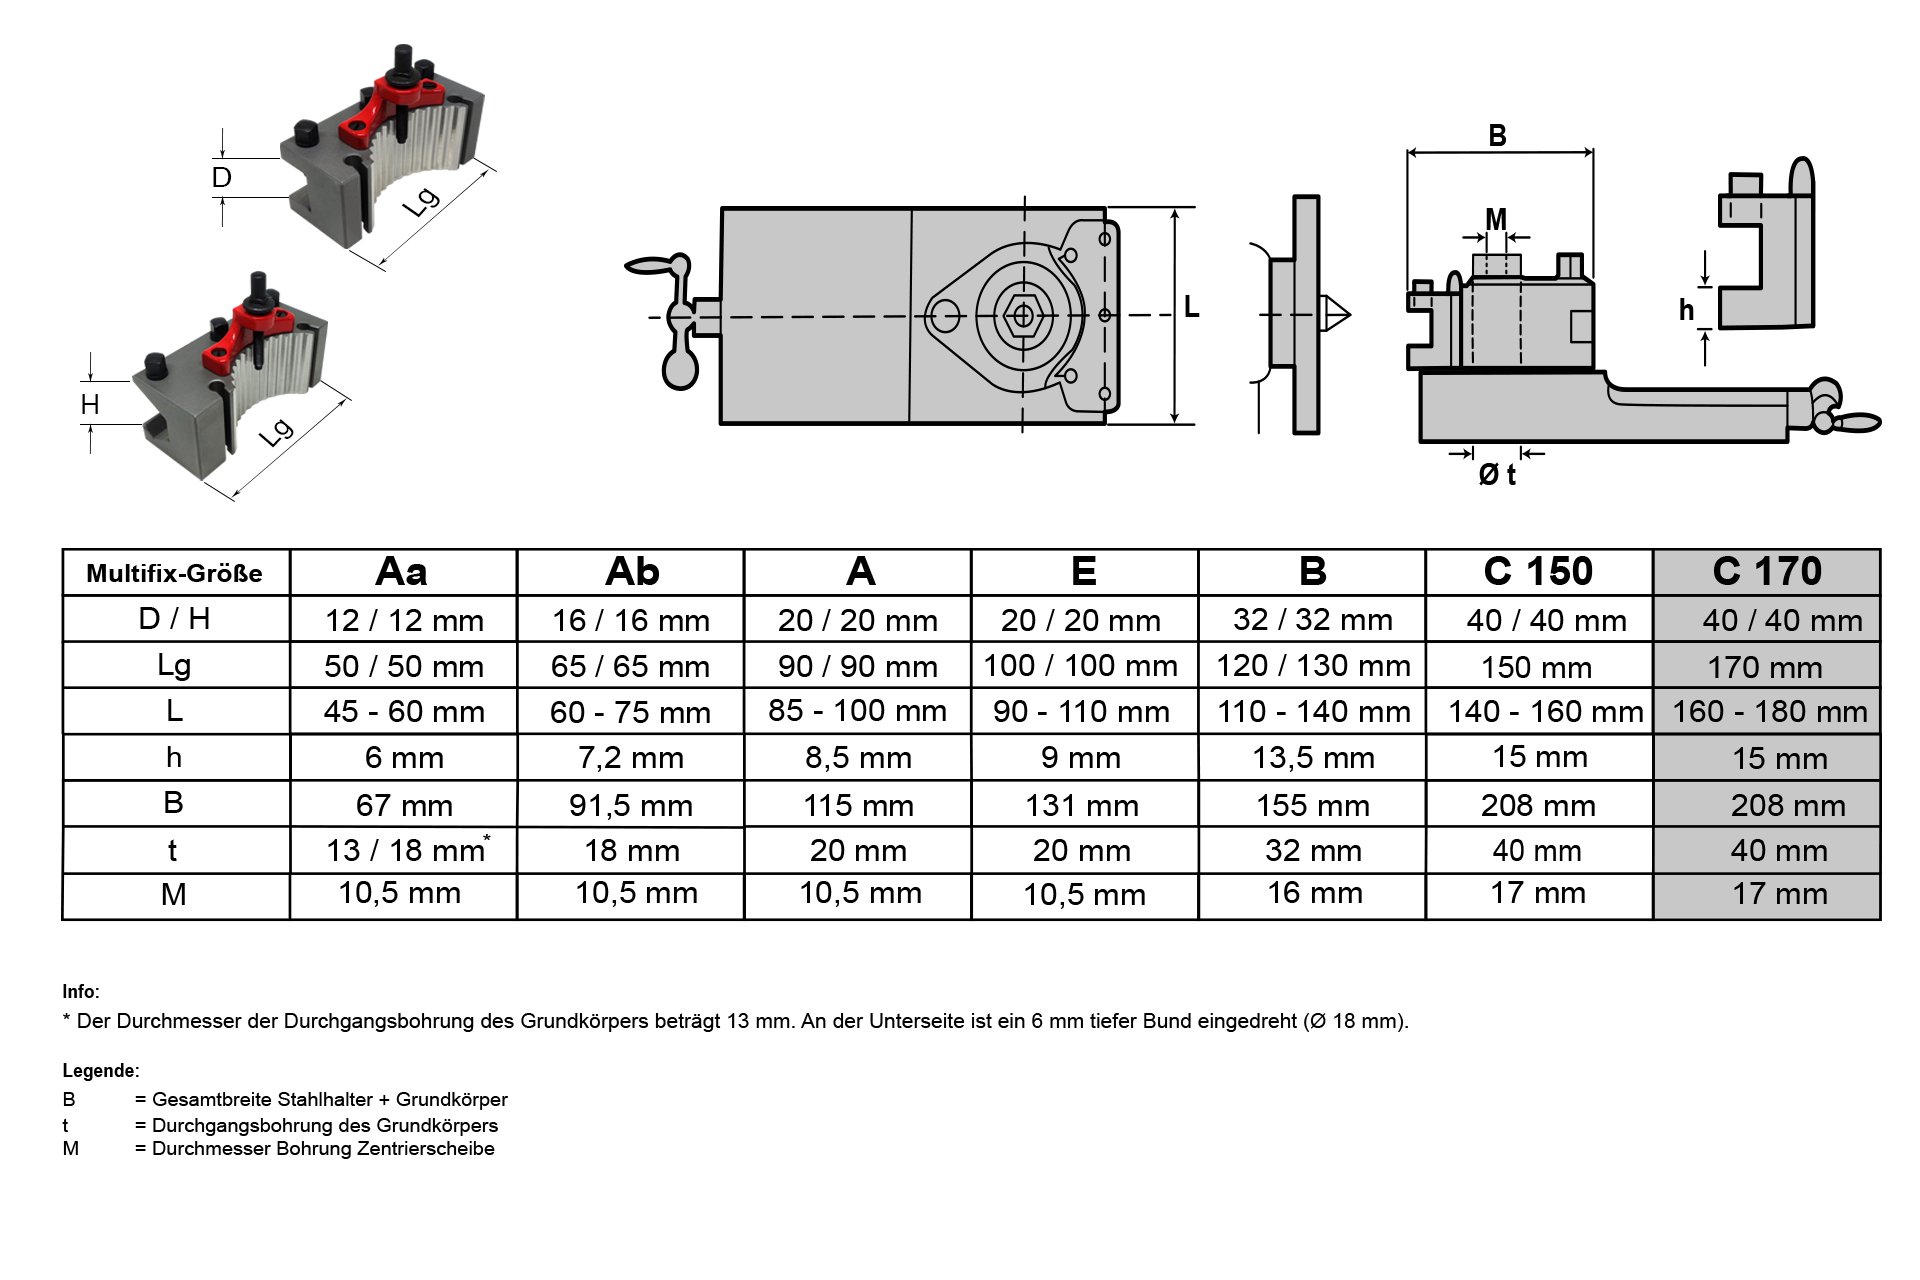 Schnellwechsel-Stahlhalter-Set, System "Multifix", Größe C (CD40170)